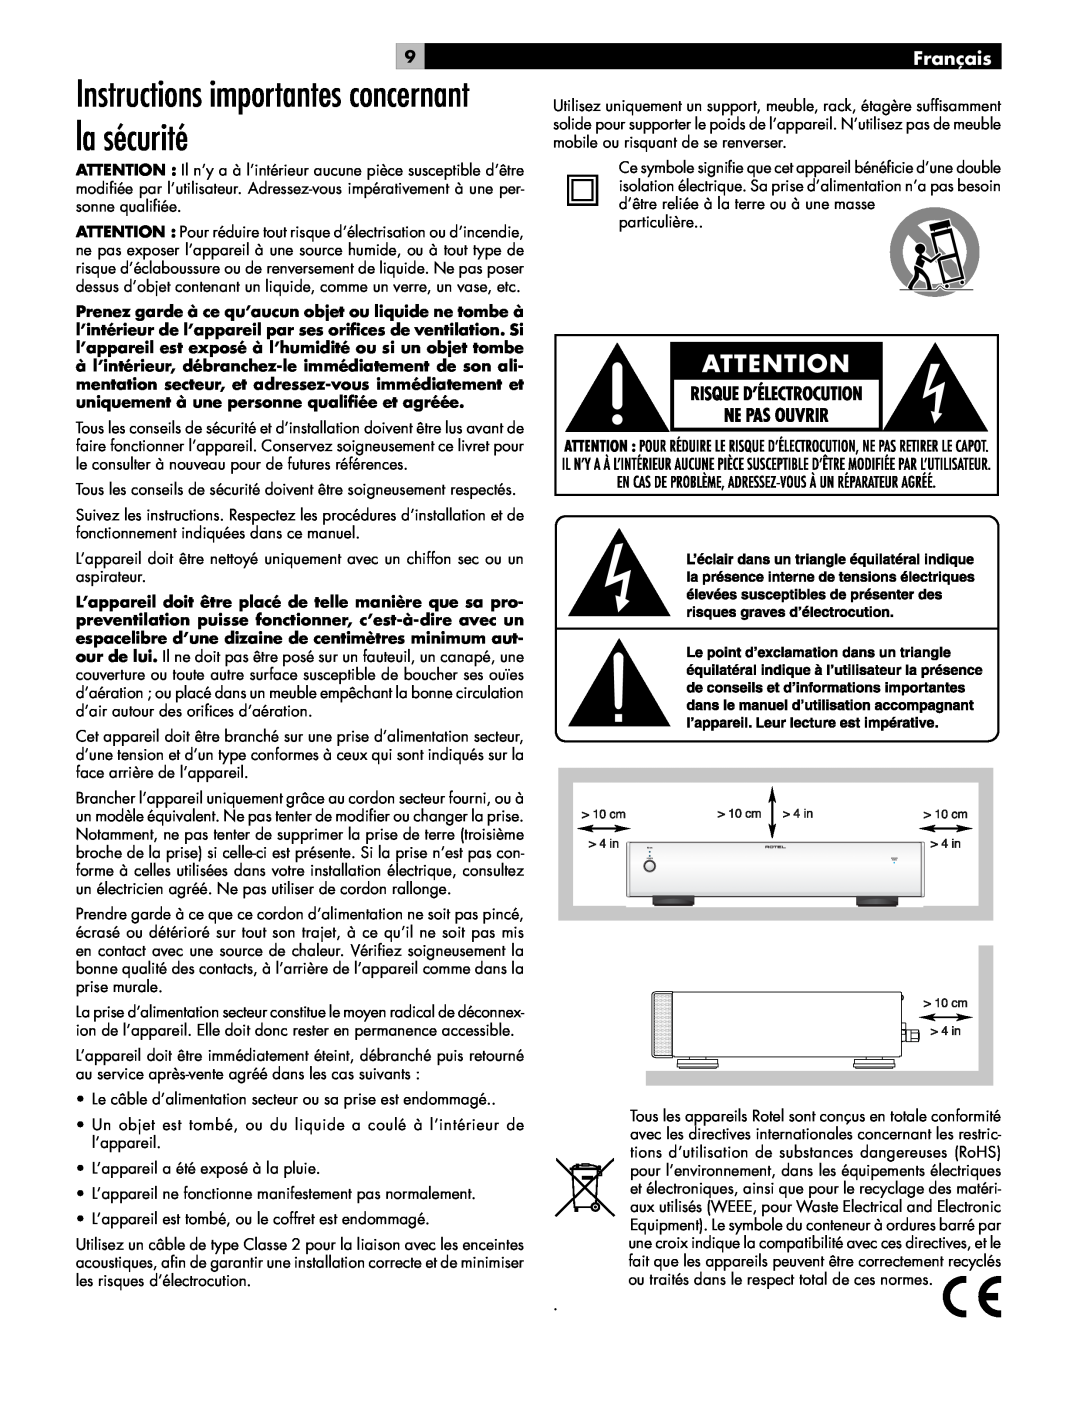 Rotel RB-06 owner manual Instructions importantes concernant la sécurité, Français 